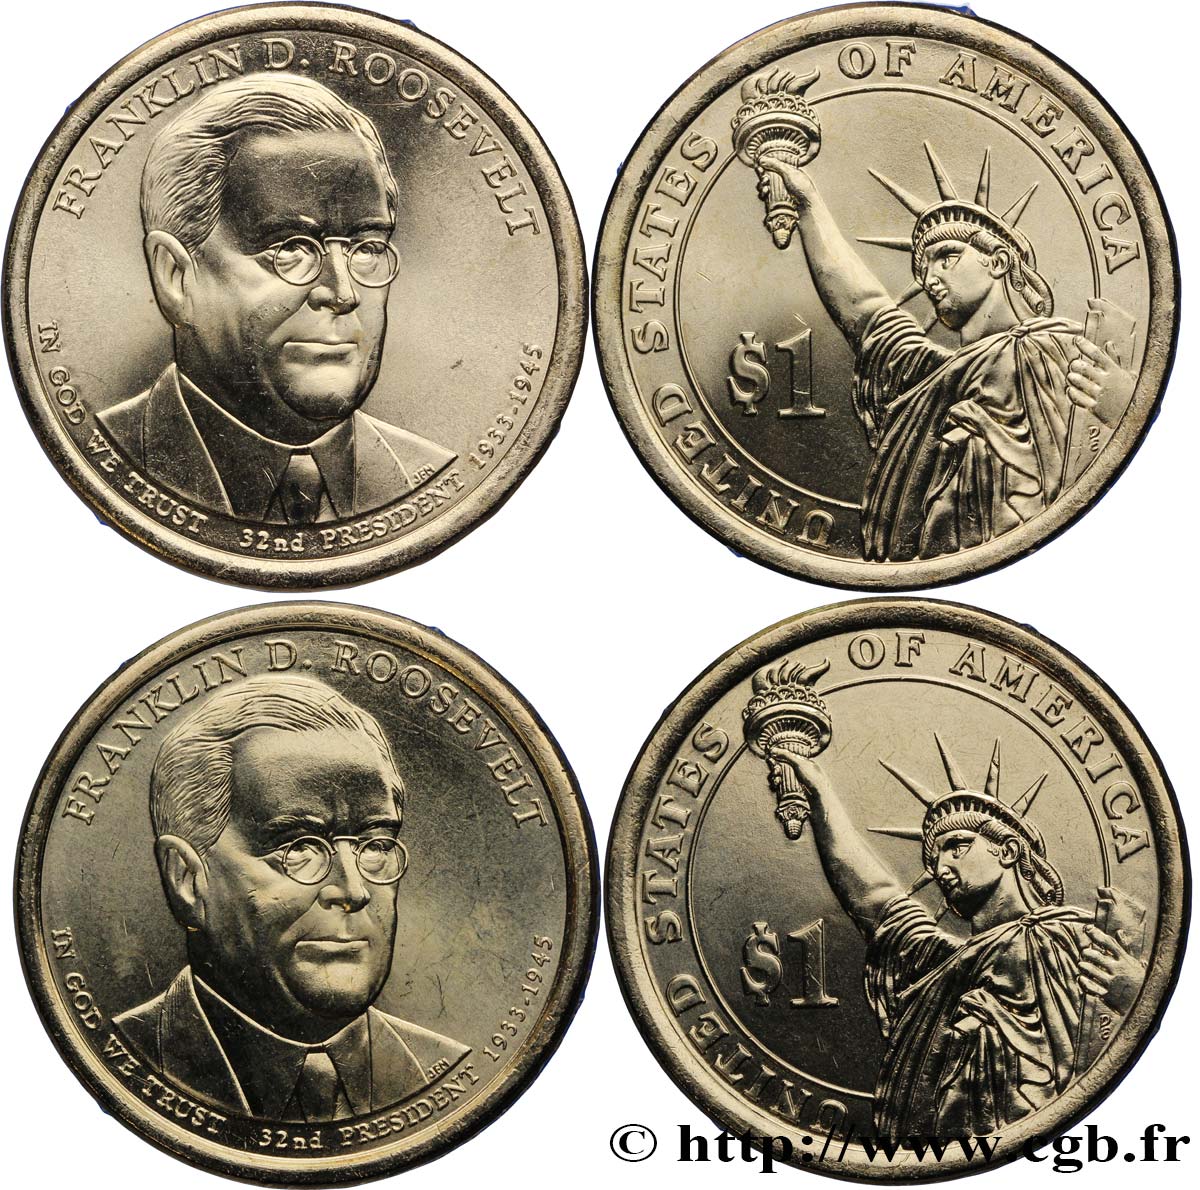 UNITED STATES OF AMERICA Lot de deux monnaies 1 Dollar Franklin Delano Roosevelt 2014 Denver MS 